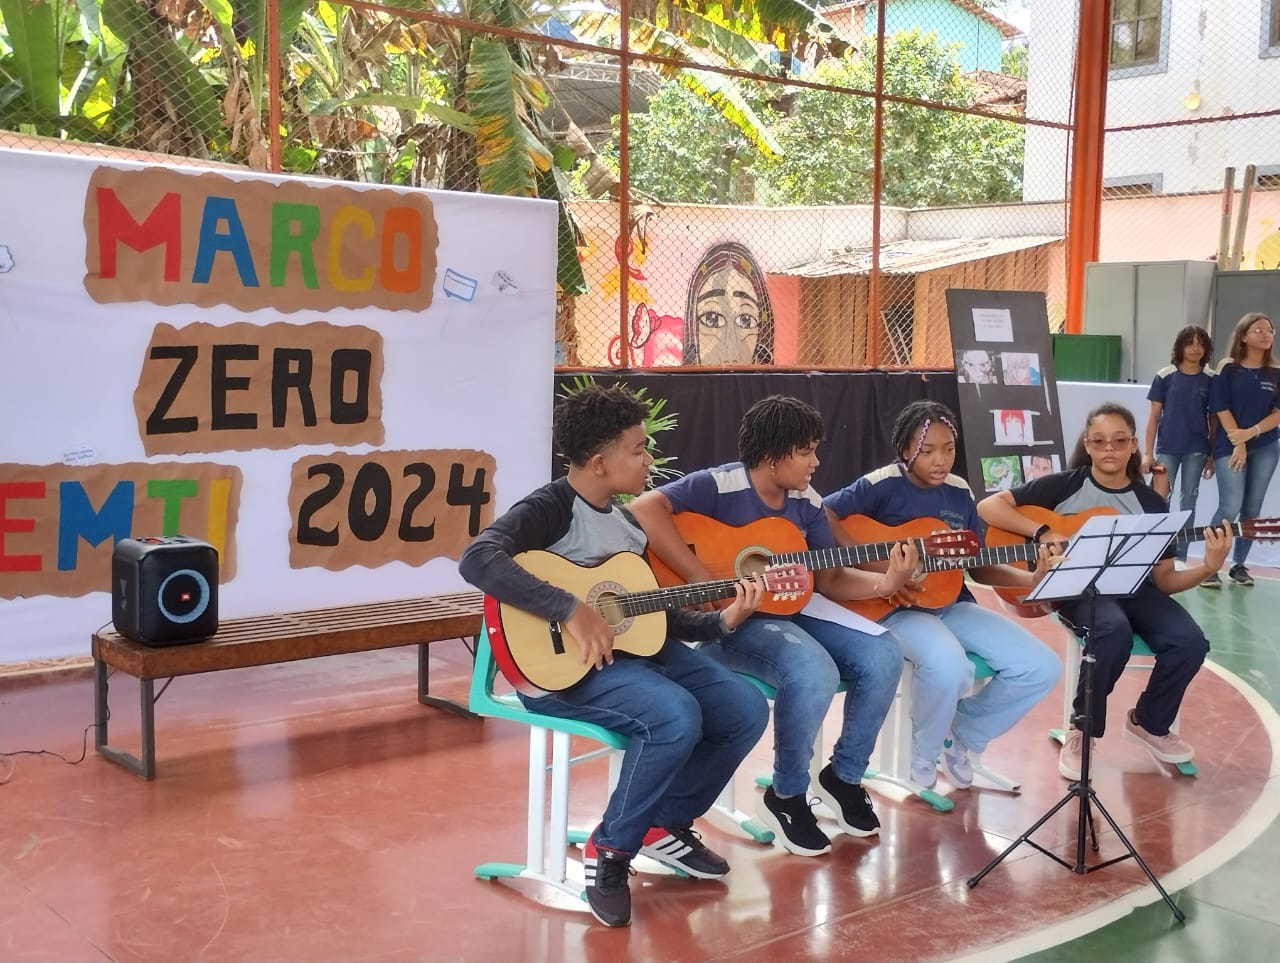 Escolas estaduais promovem integração entre estudantes do EMTI com o Acolhimento Marco Zero